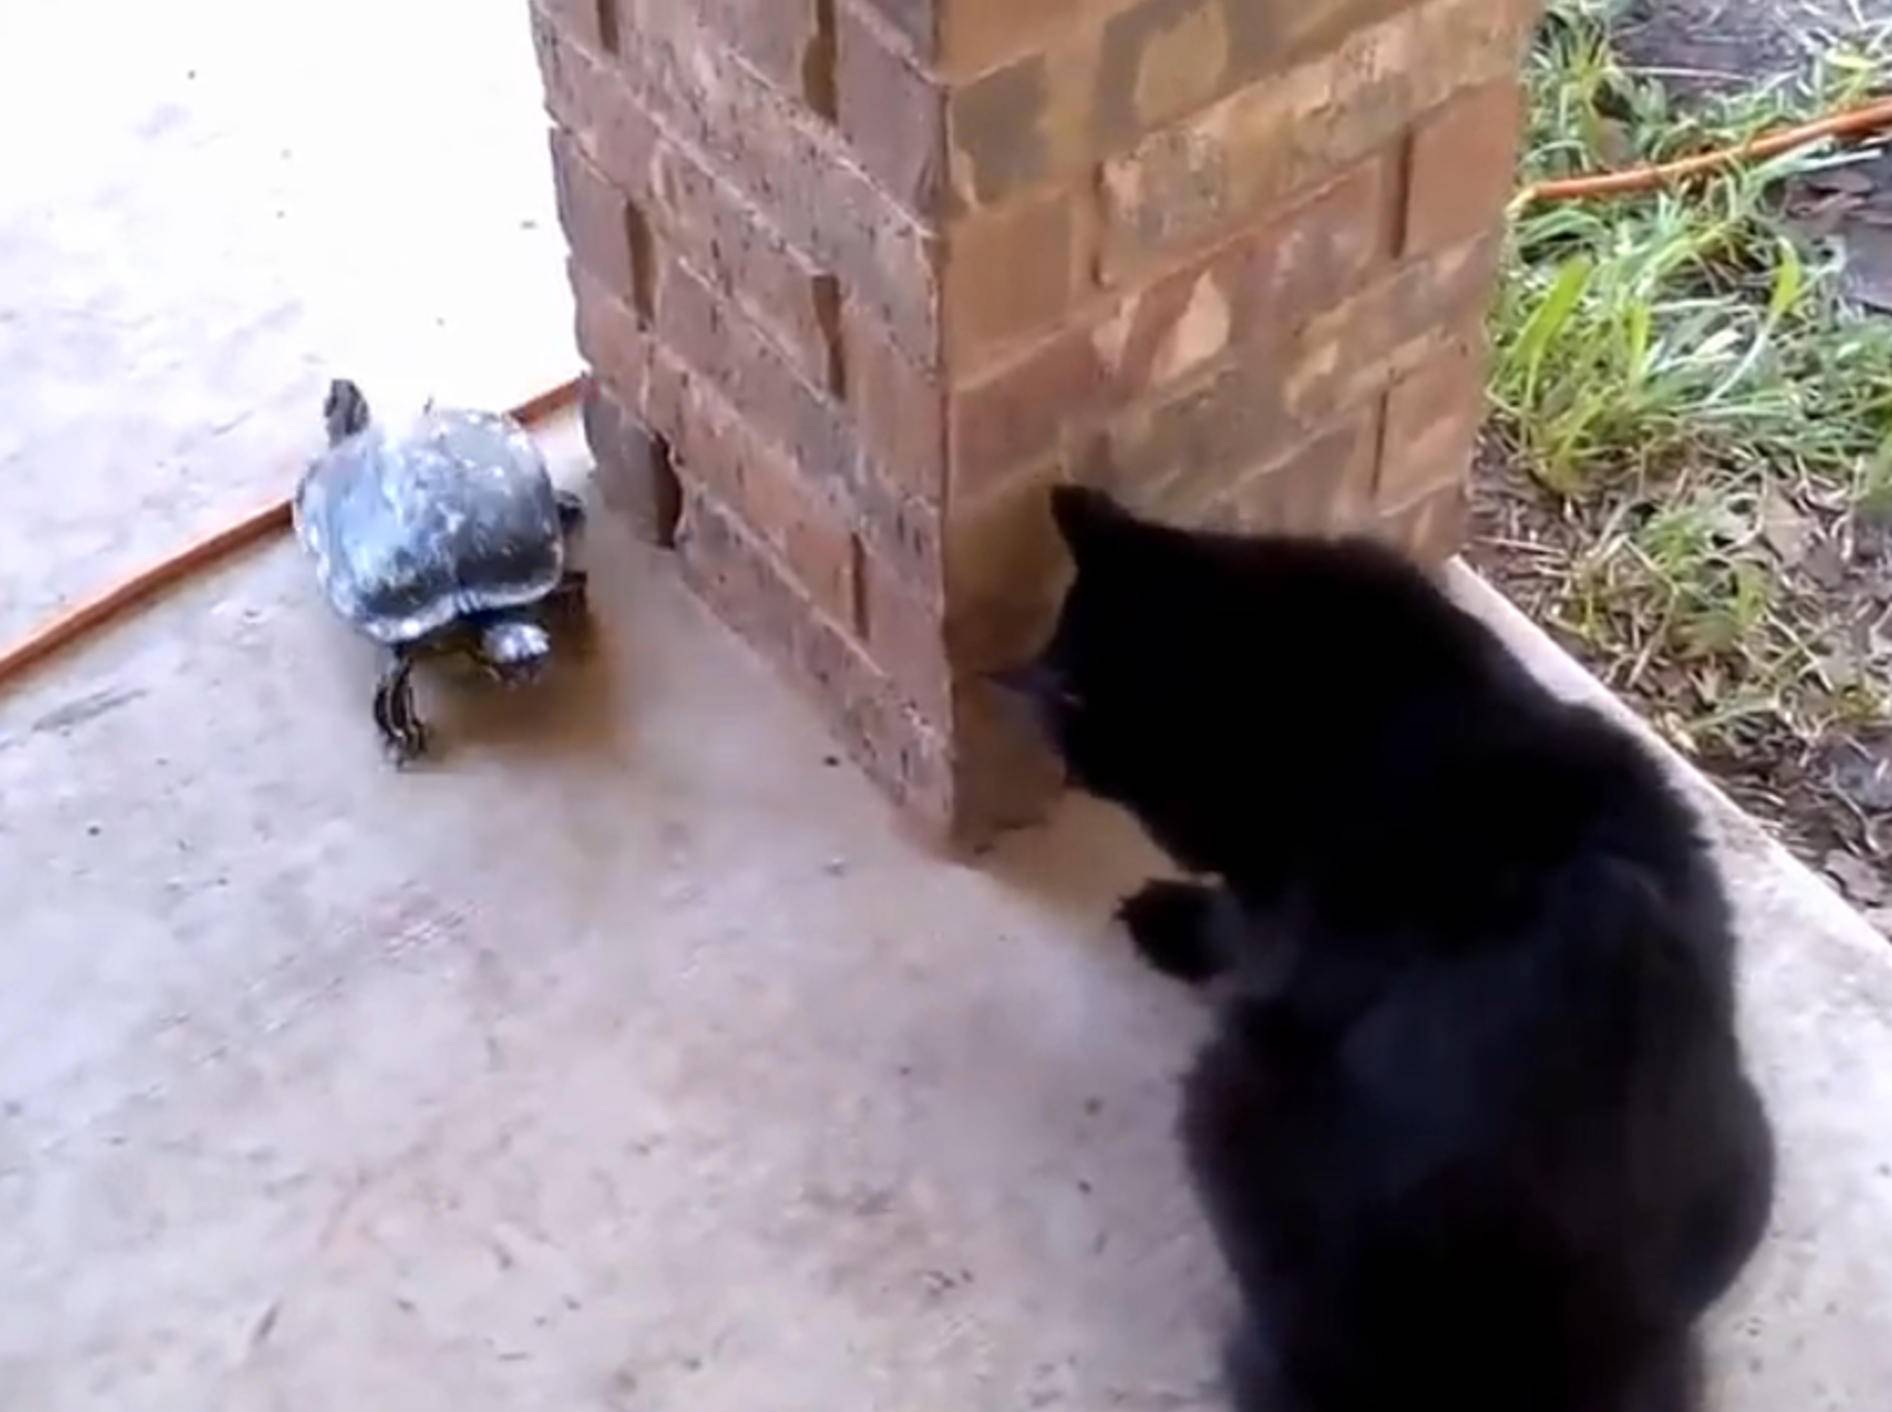 Katze und Schildkröte: Wer jagt hier wen? – Bild: YouTube / Catsss